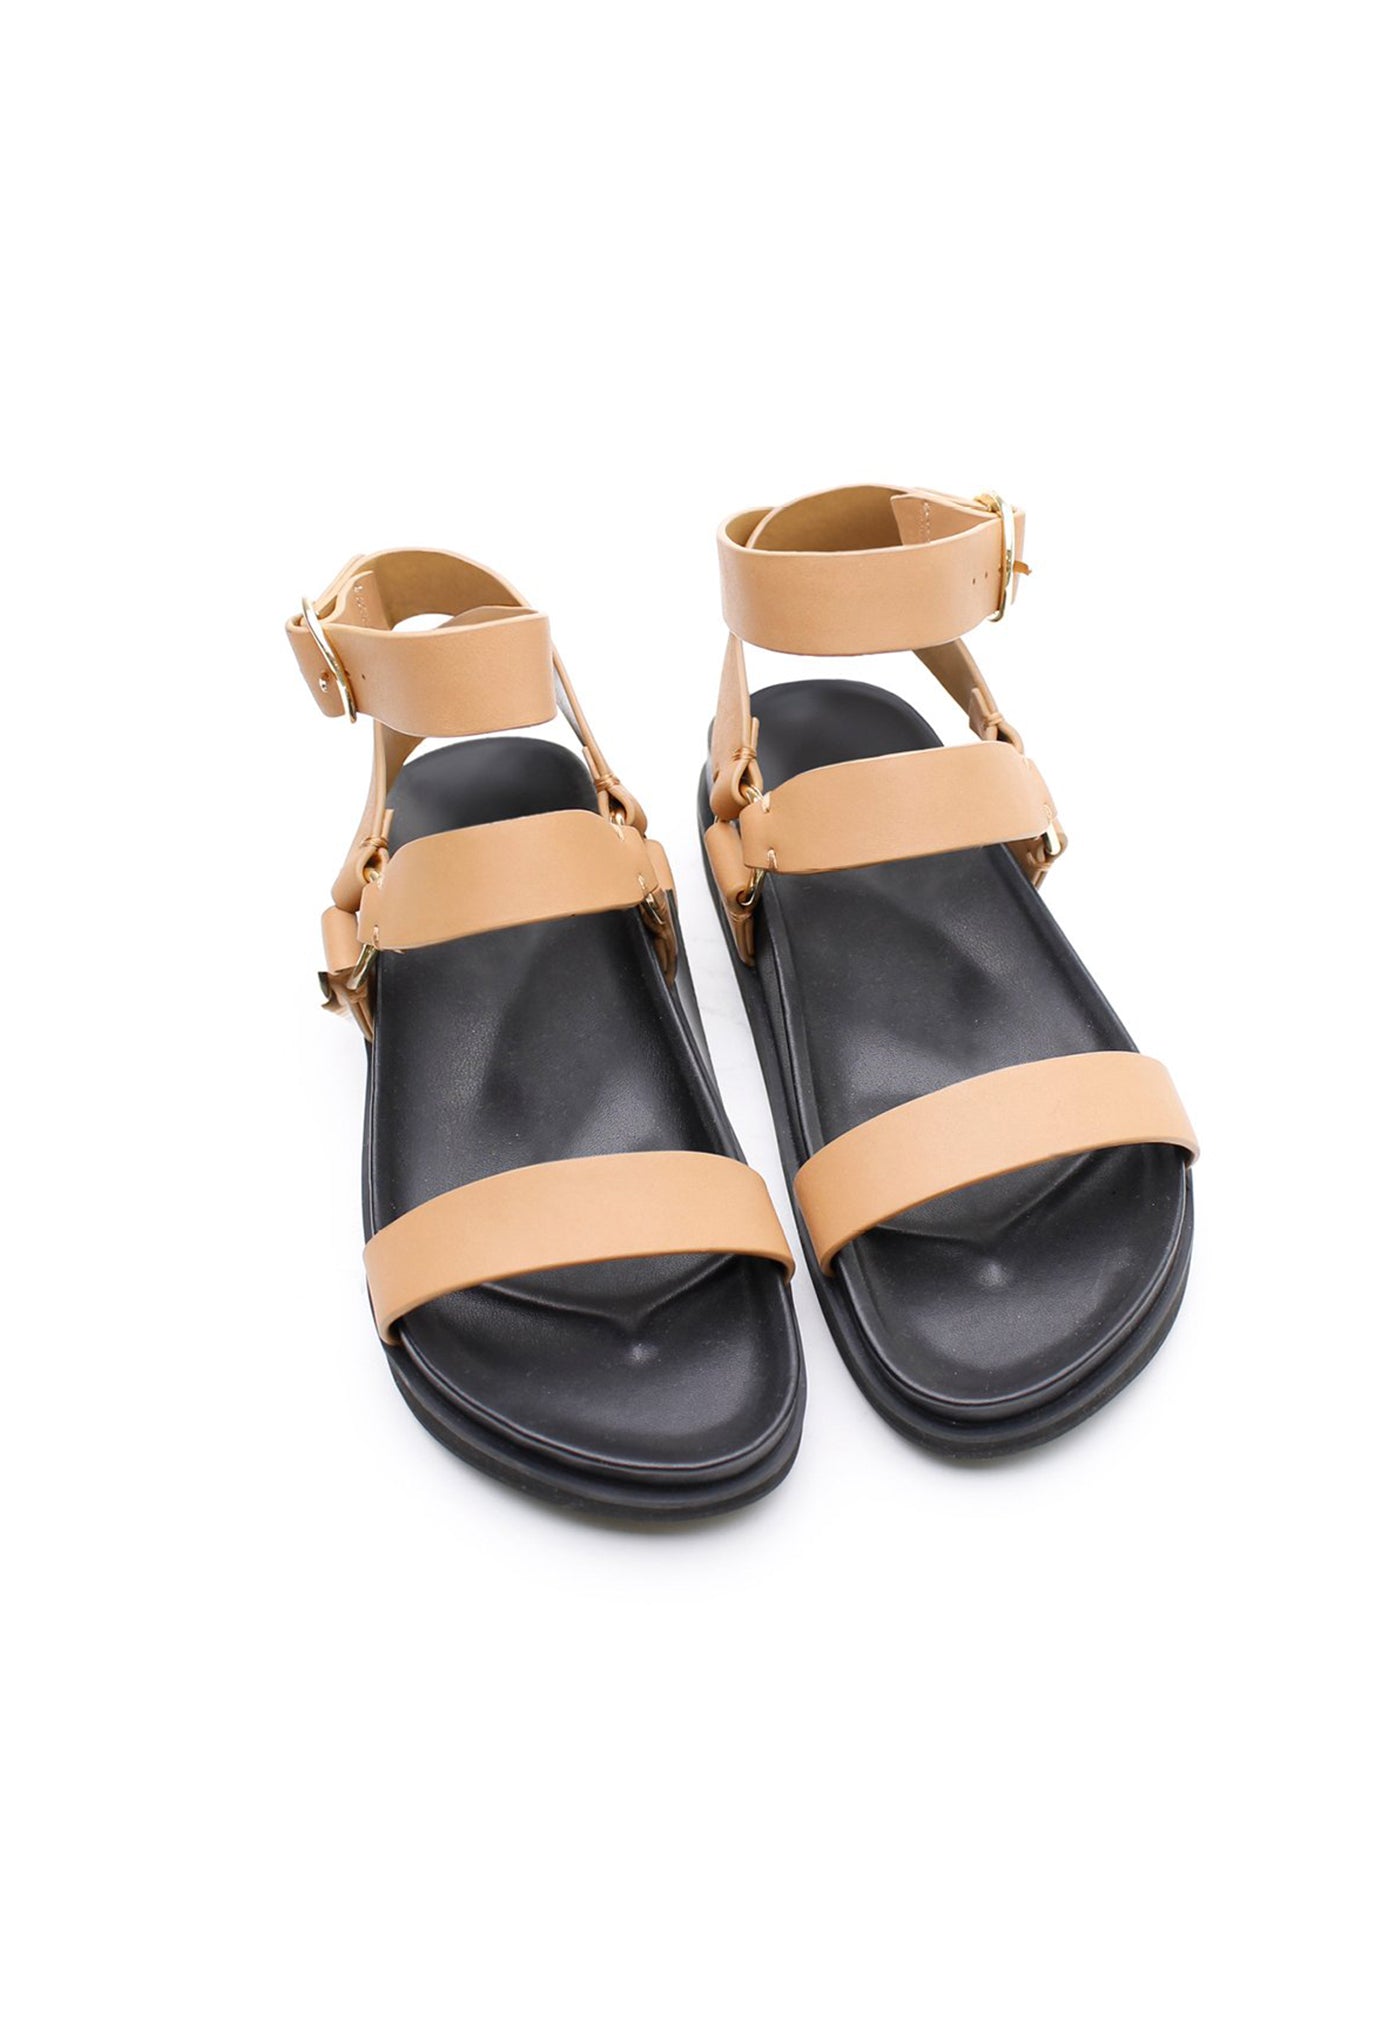 Platform Sandal - Light Tan sold by Angel Divine